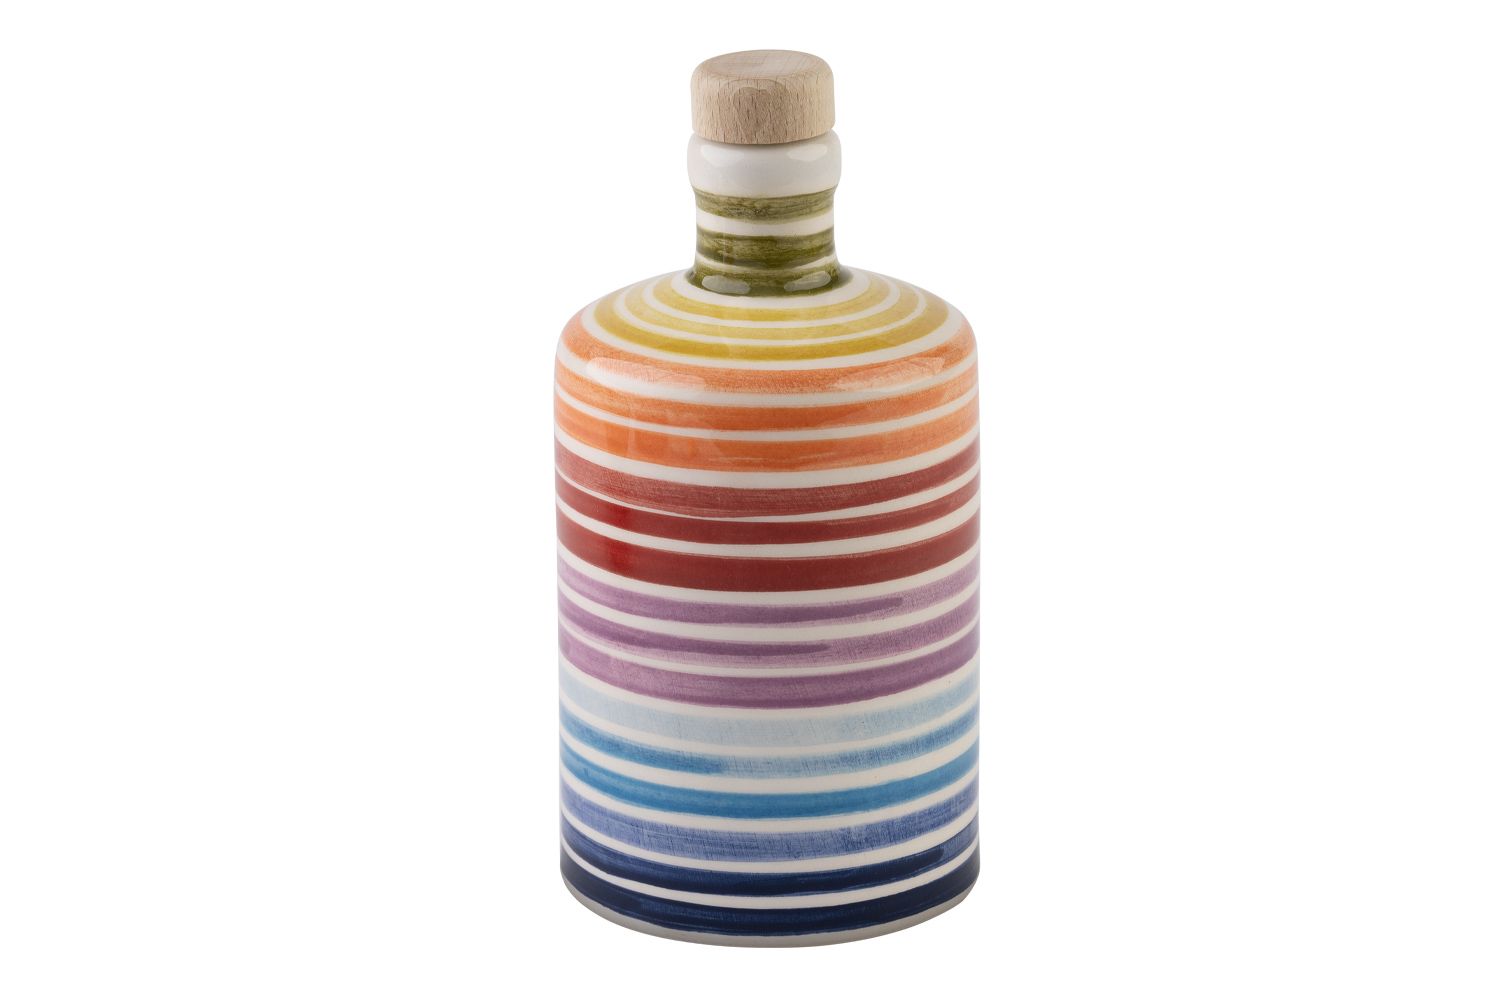 Eine runde Olivenölflasche mit Regenbogenfarben